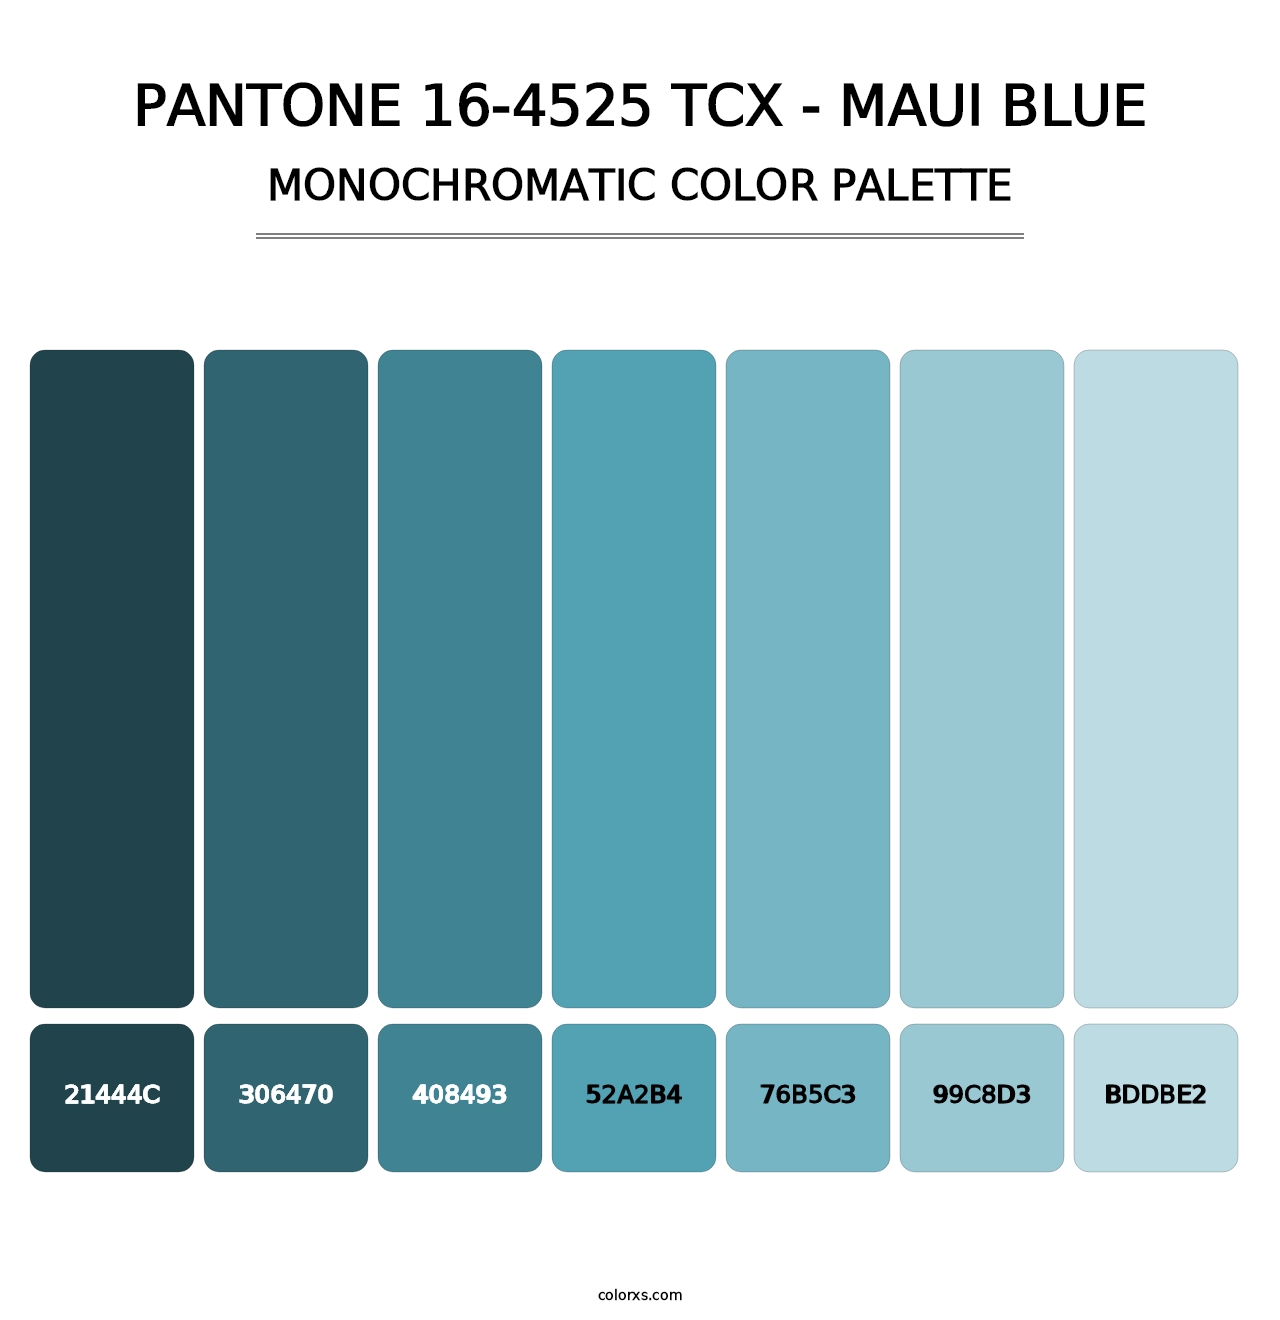 PANTONE 16-4525 TCX - Maui Blue - Monochromatic Color Palette